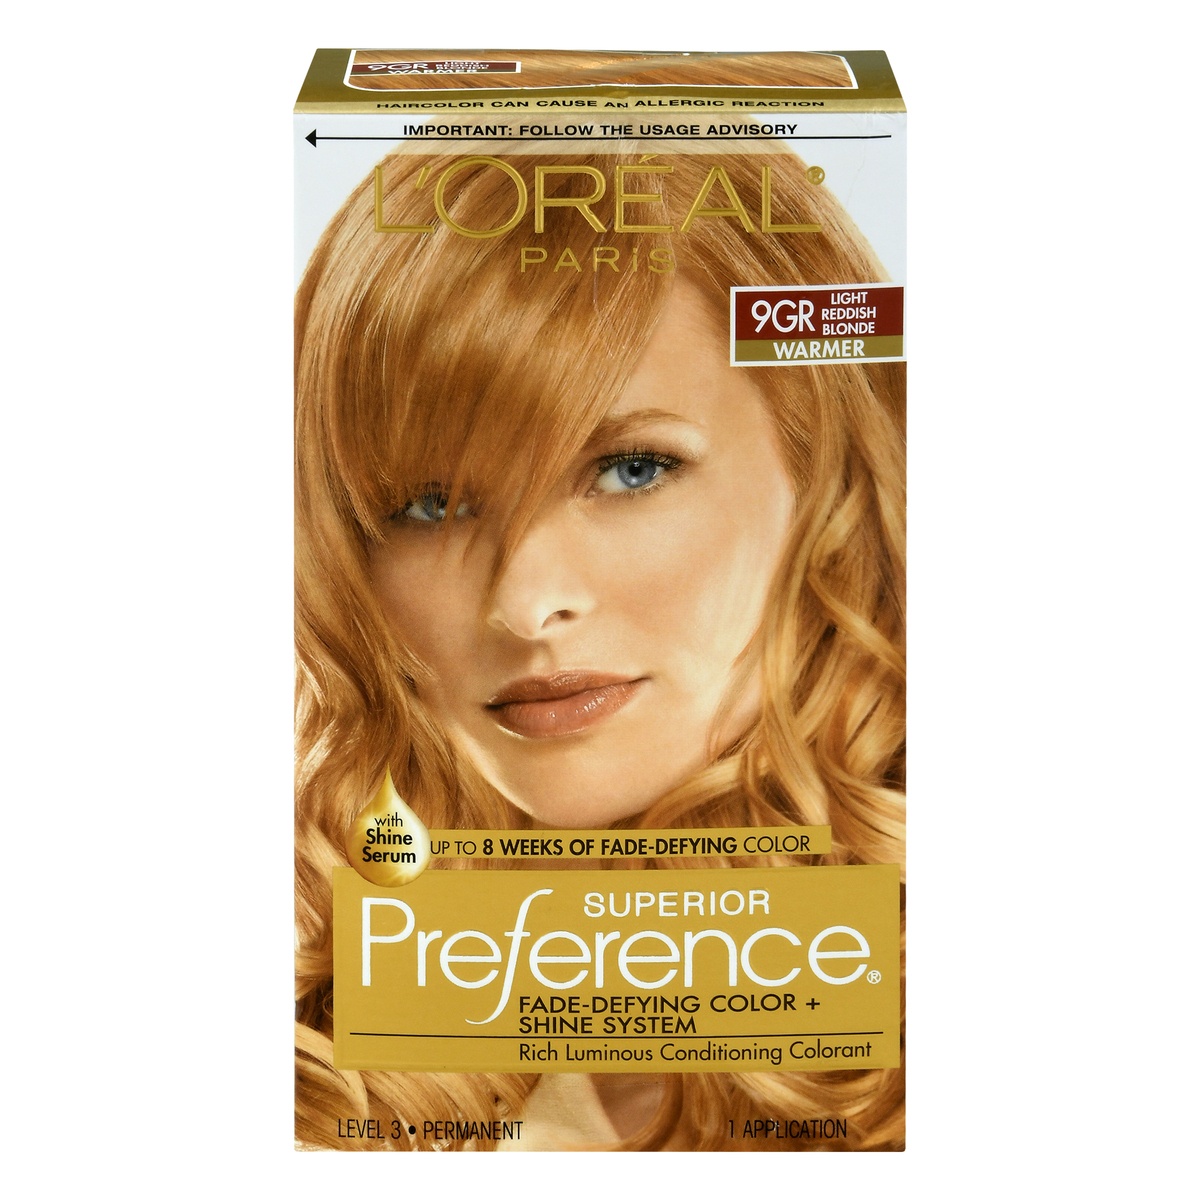 slide 1 of 1, L'Oréal Superior Preference Fade-Defying Color + Shine System - 9GR Light Reddish Blonde, 1 ct